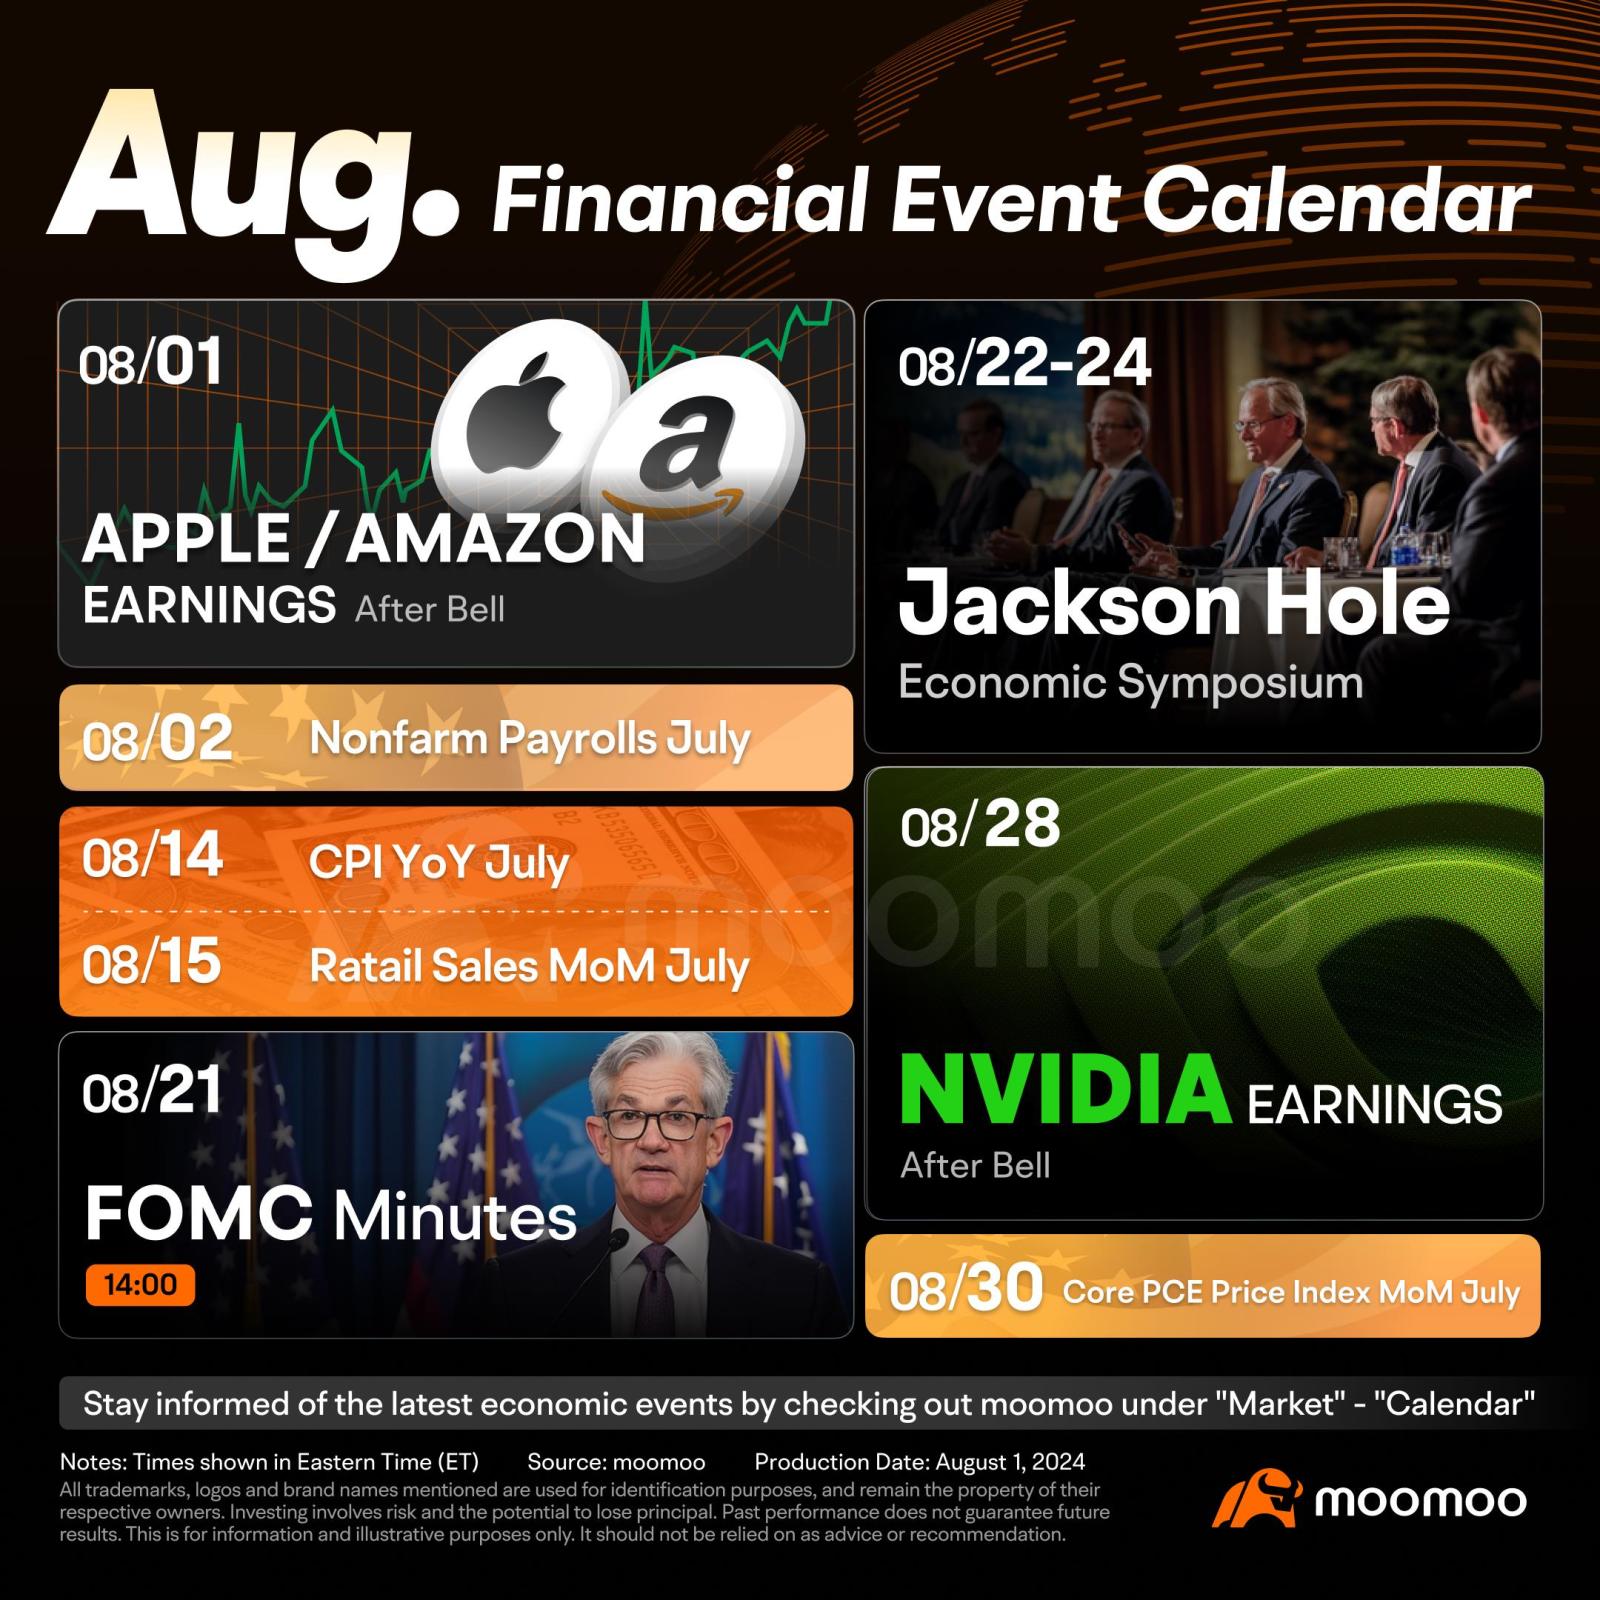 8月の必見の金融イベント：Nvidiaの収益、ジャクソンホール経済シンポジウム、非農業部門雇用者数、インフレデータ